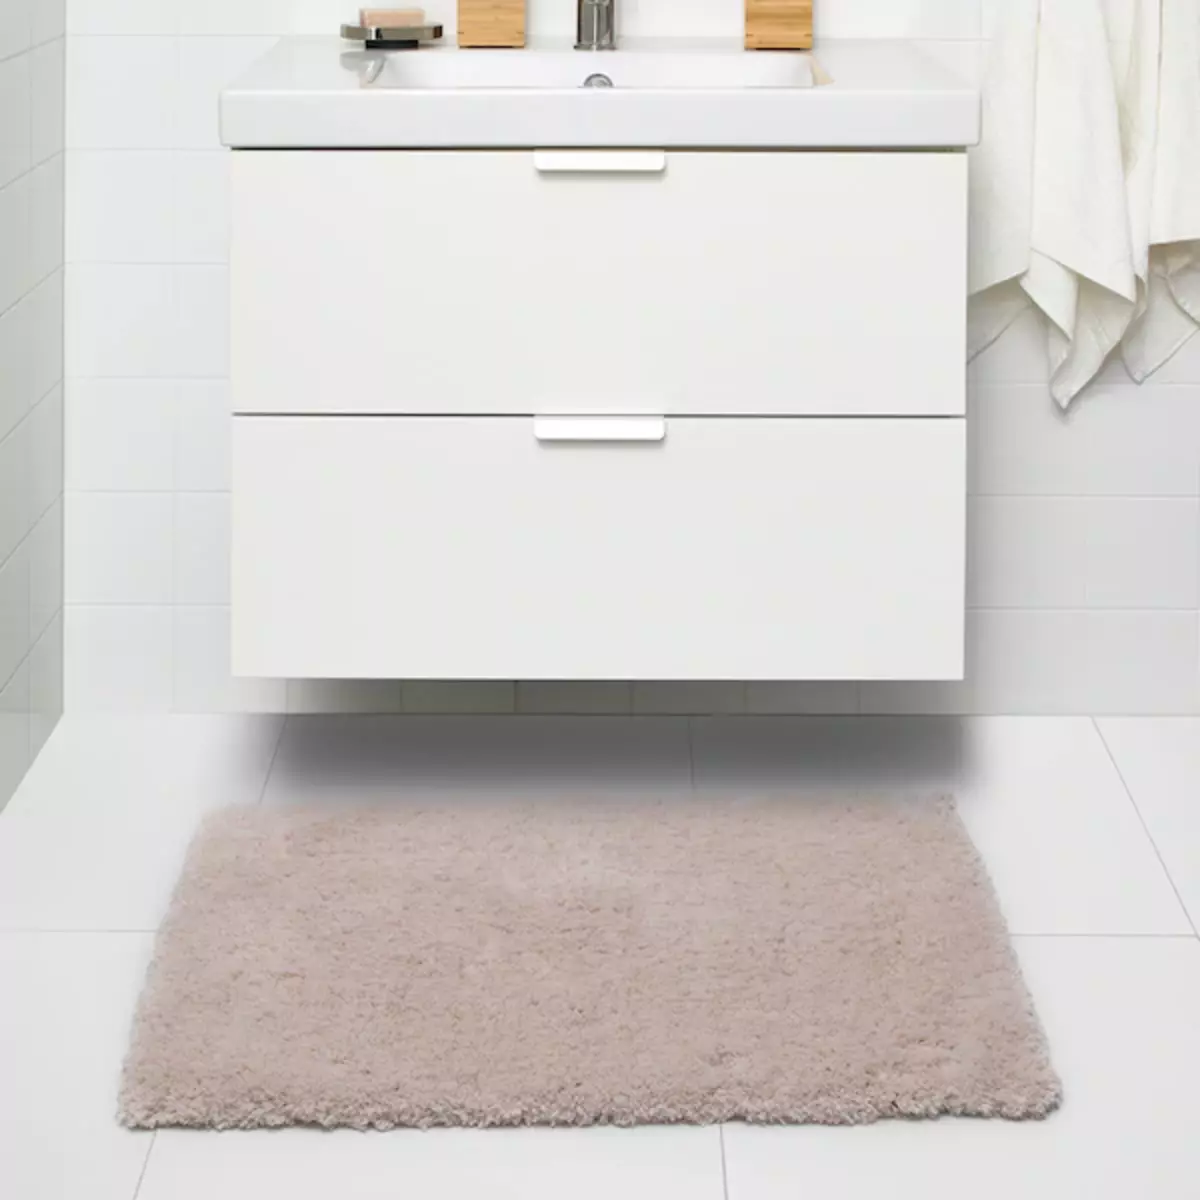 11 Užitočné výrobky z IKEA pre tých, ktorí chcú, aby sa kúpeľňa uvoľnila 7050_68